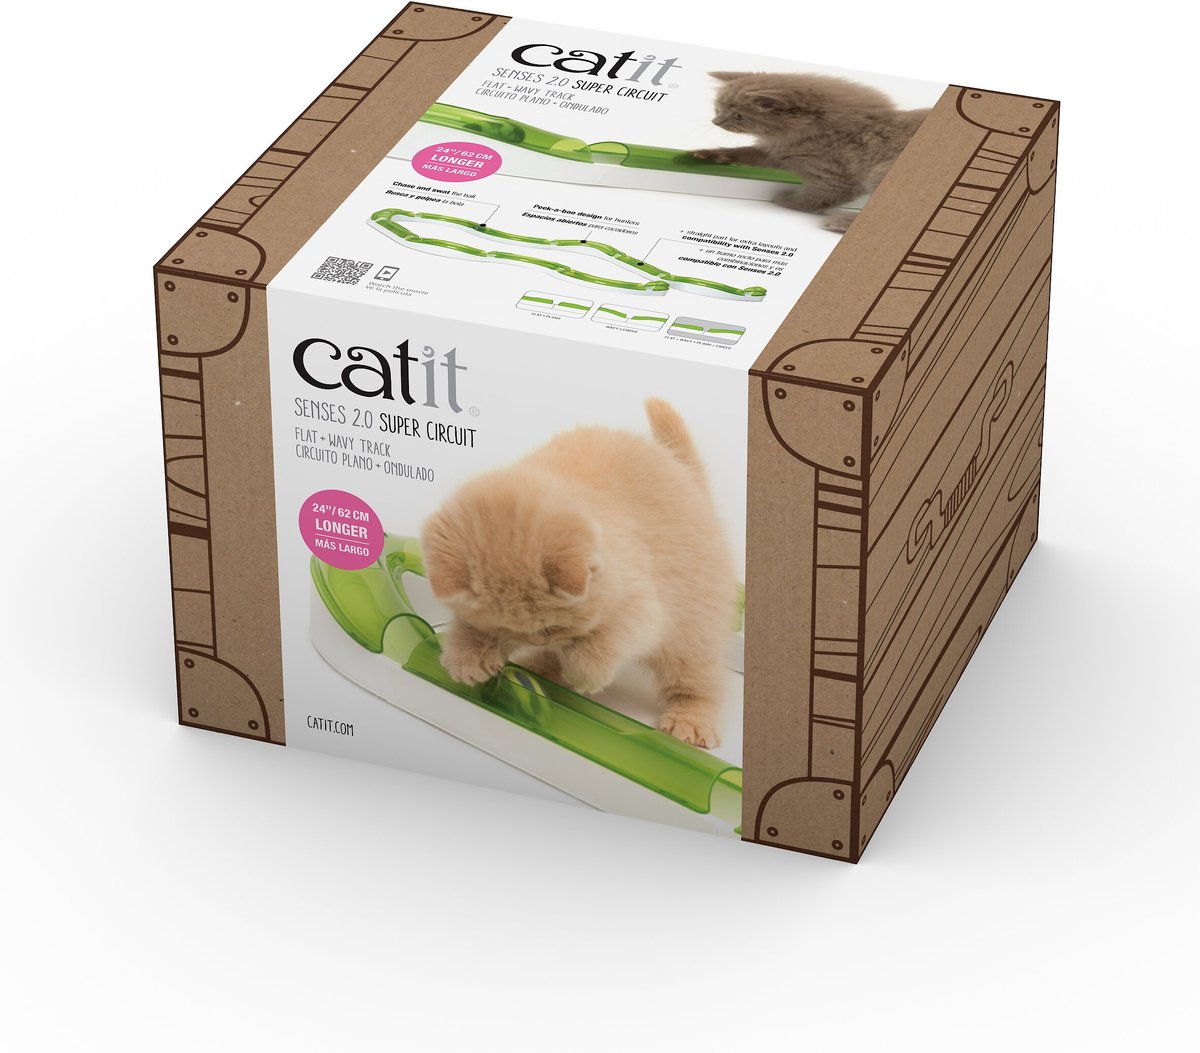 Catit Senses 2 0 Super Circuit Cat Toy